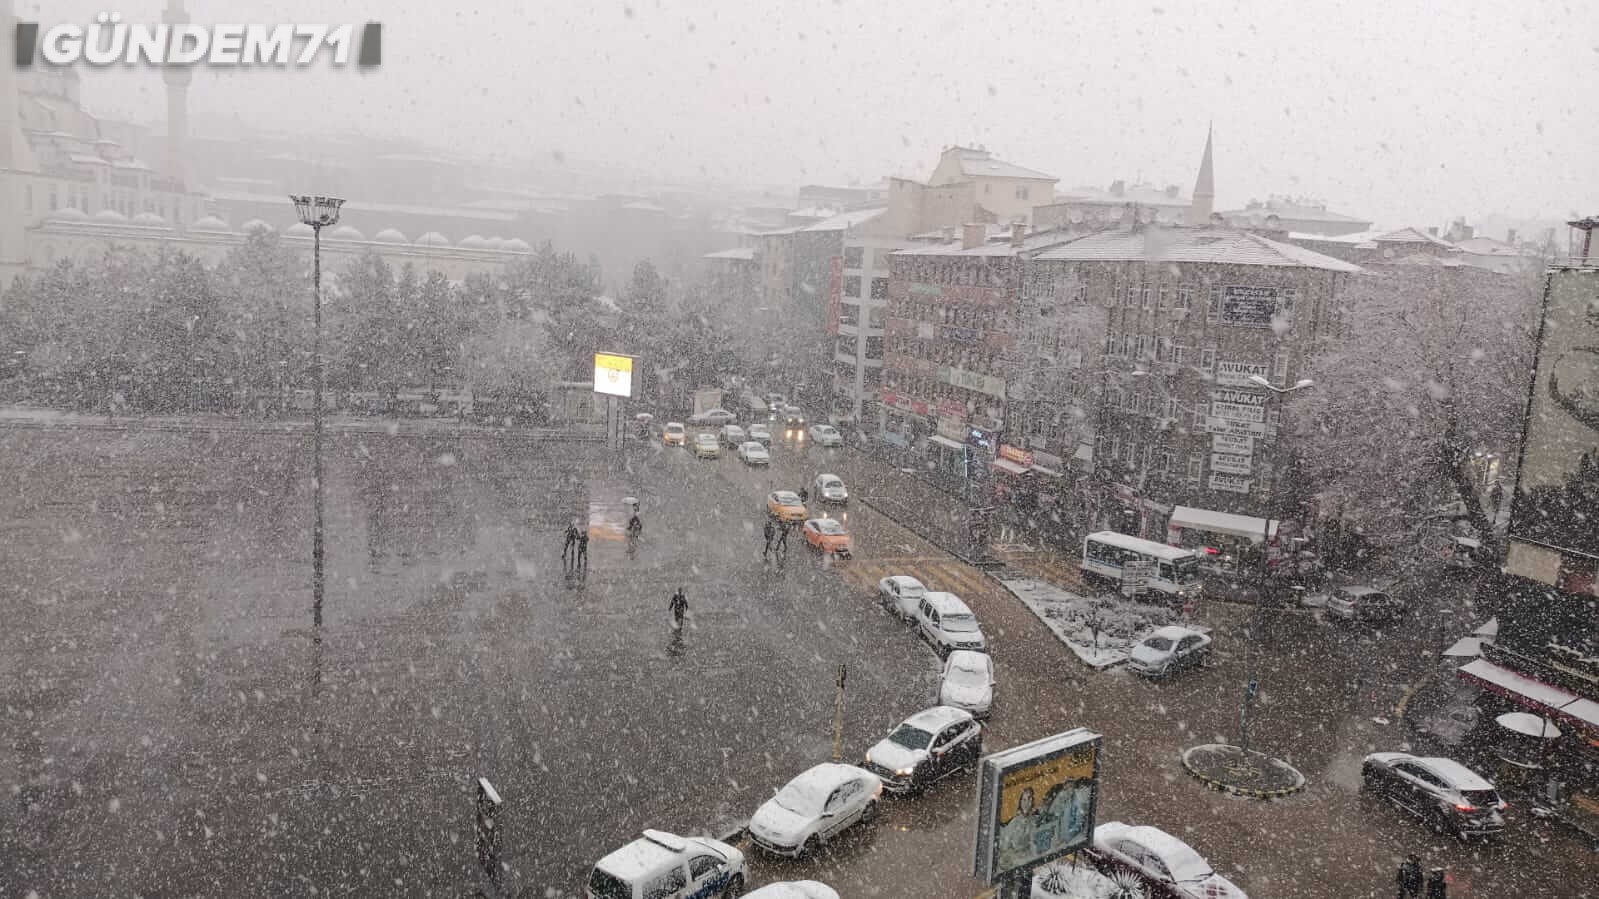 kirikkale-mart-ayi-kar-yagisi-01-1 Meteoroloji'nin Tahminleri Tuttu; Kırıkkale'ye Mart Ayında Lapa Lapa Kar Yağdı